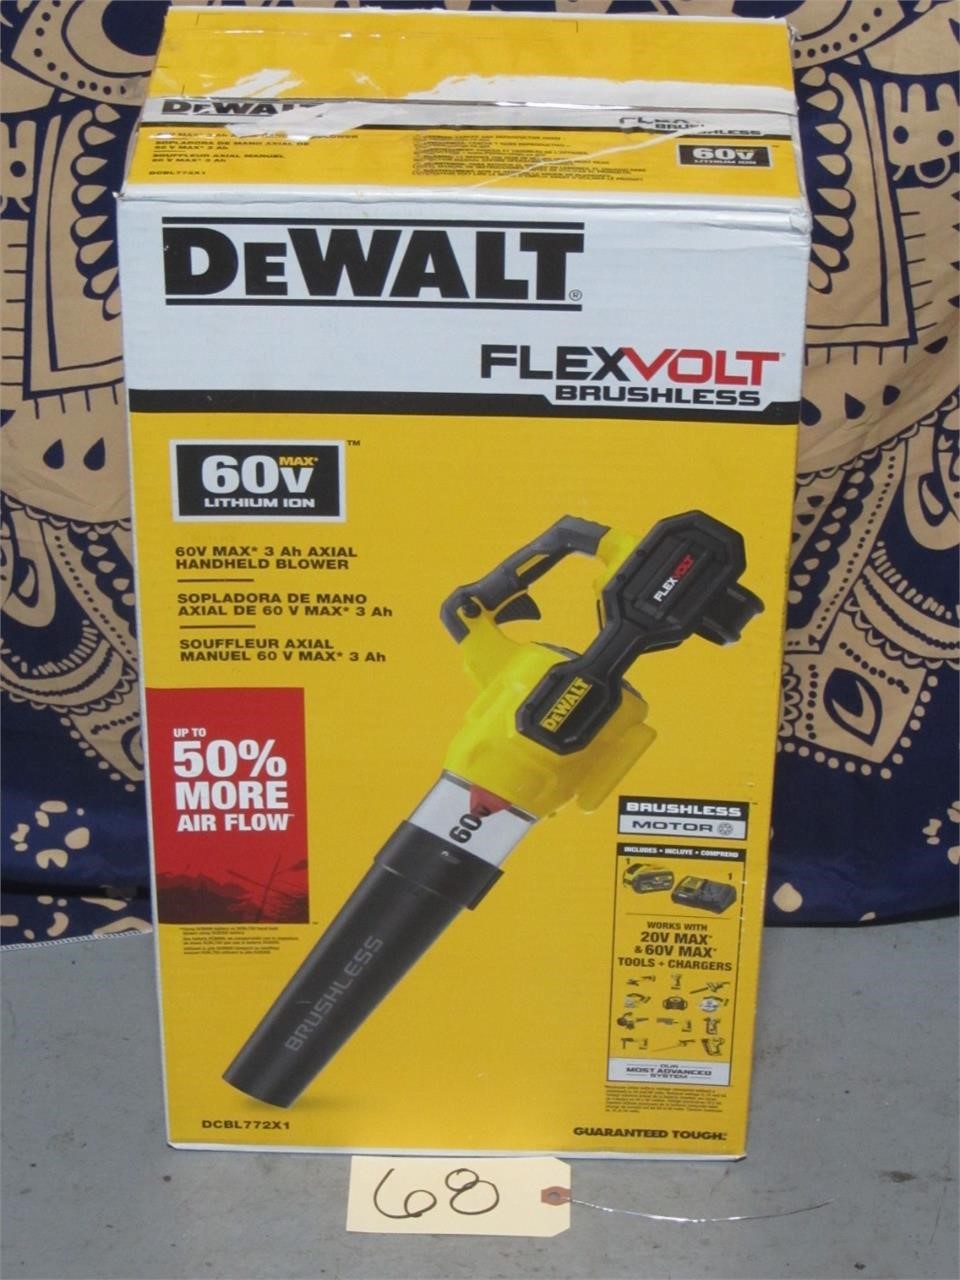 New & Used DeWalt & Makita Tool / Furnace Parts & More